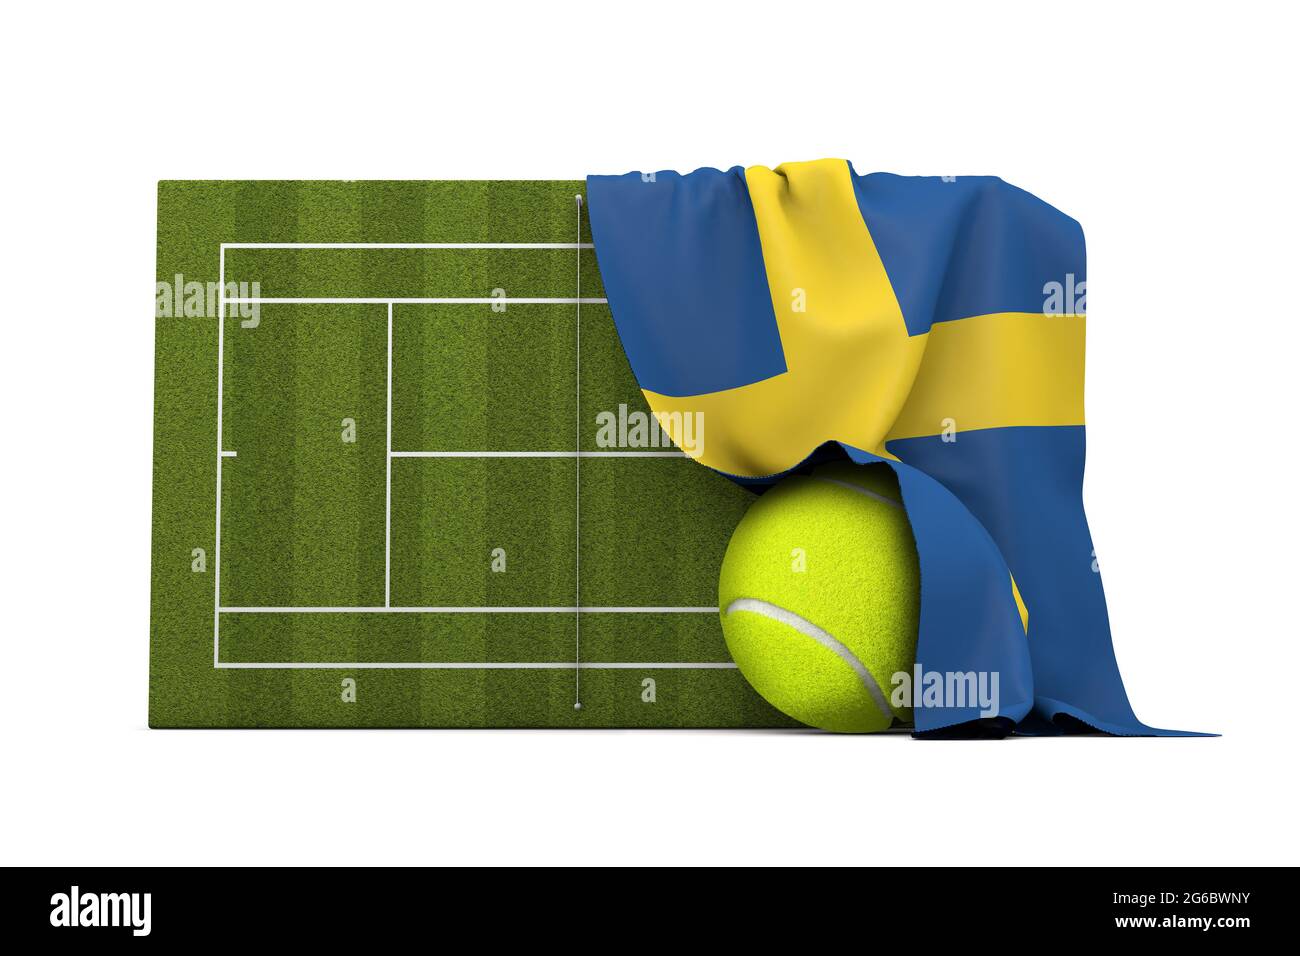 Drapeau suédois drapé sur un court de tennis en herbe et un ballon. Rendu 3D Banque D'Images